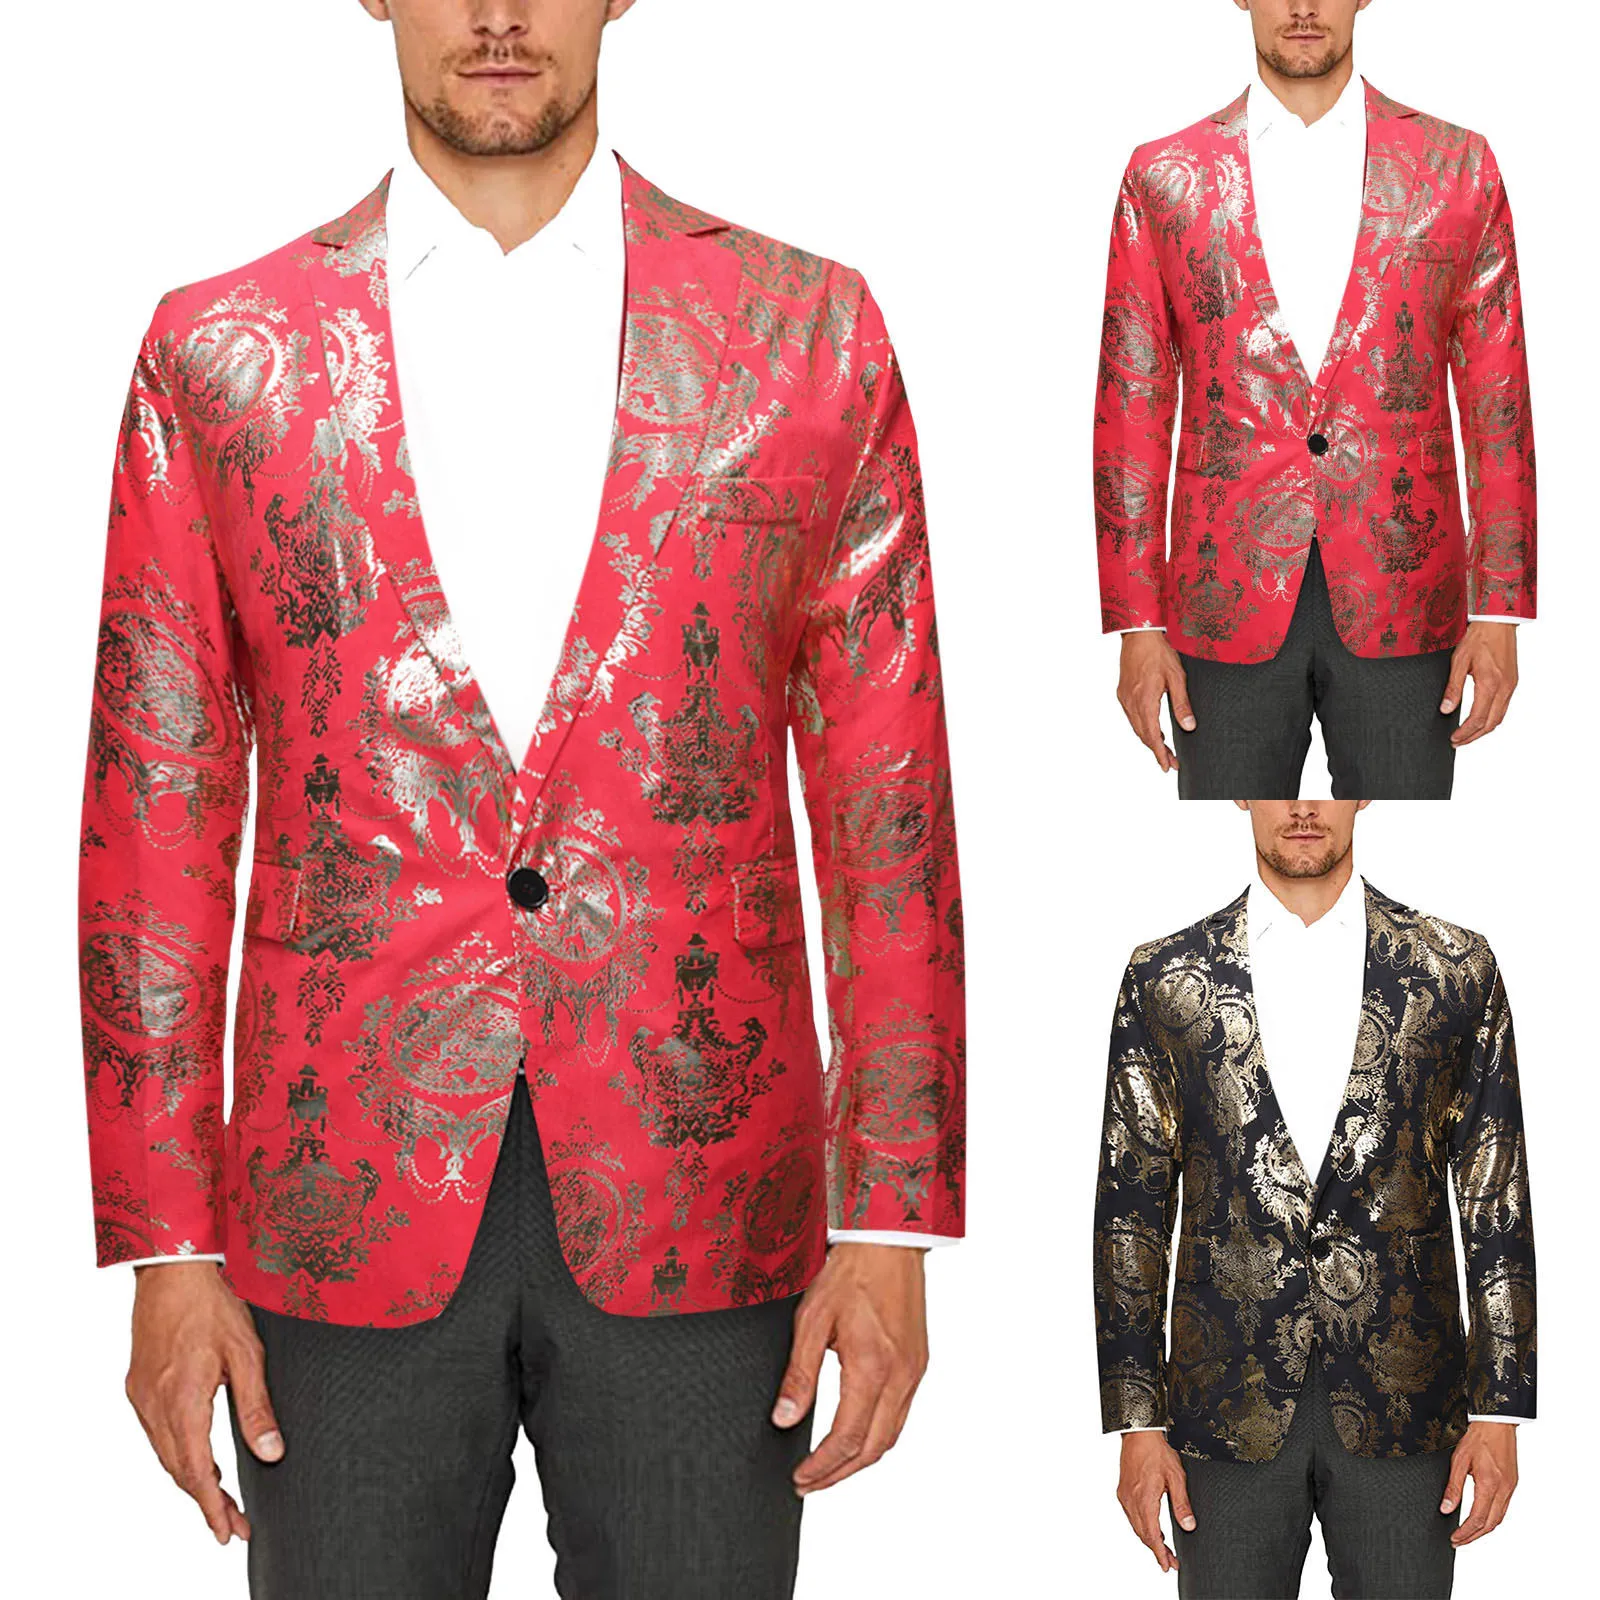 

Men's Autumn Winter Printed Turndown Collar Blazer Long Sleeved Casual Suit Coats Men's Business Casual Gentleman Suit Jacket